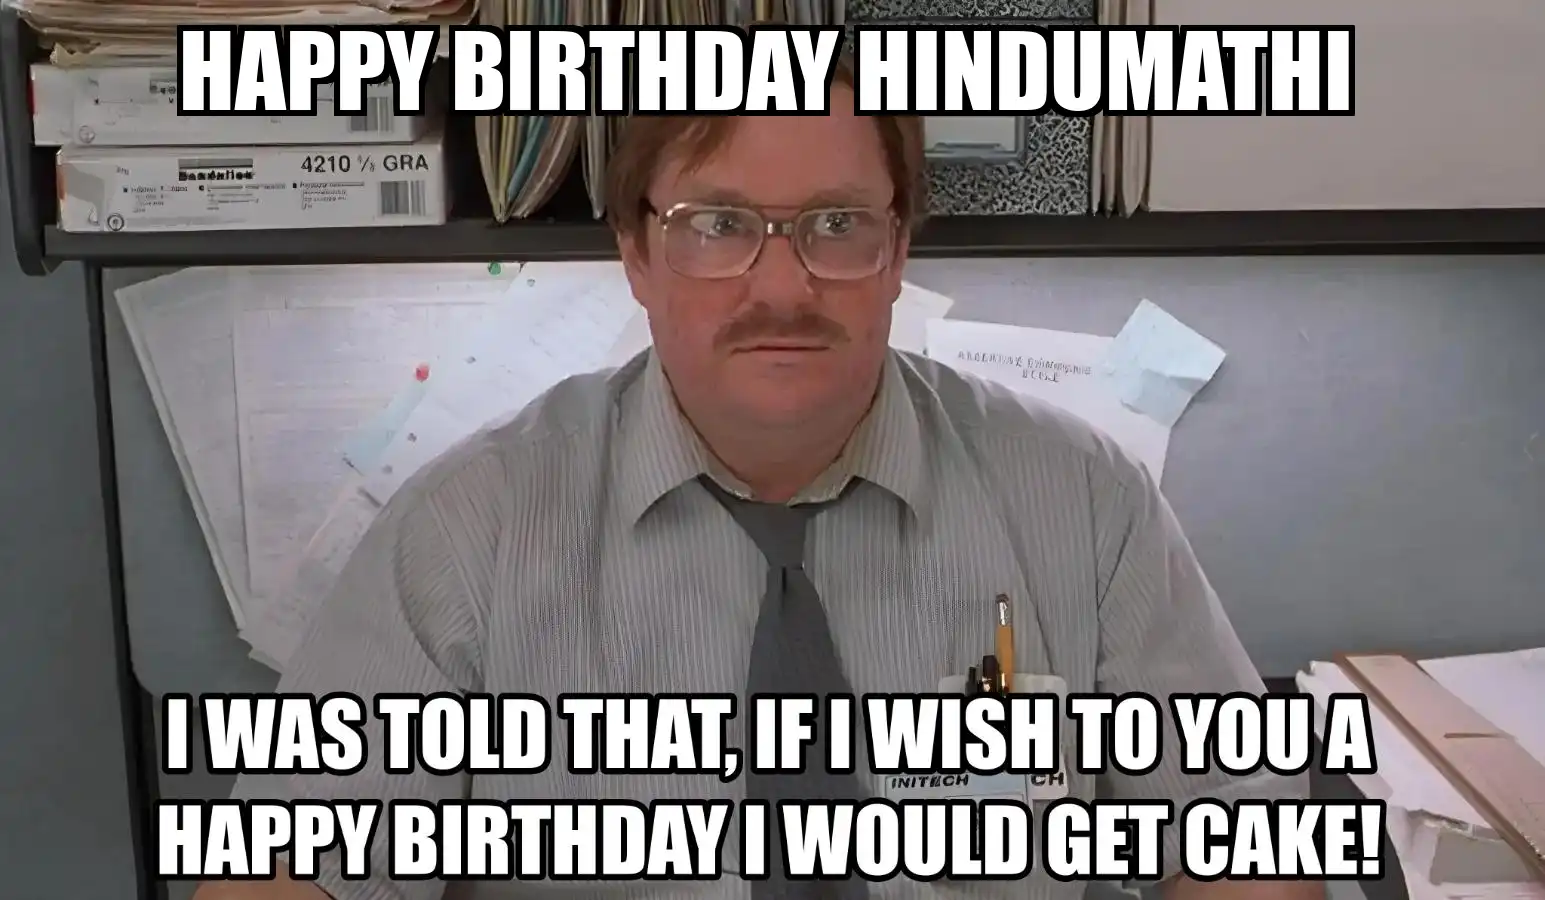 Happy Birthday Hindumathi I Would Get A Cake Meme